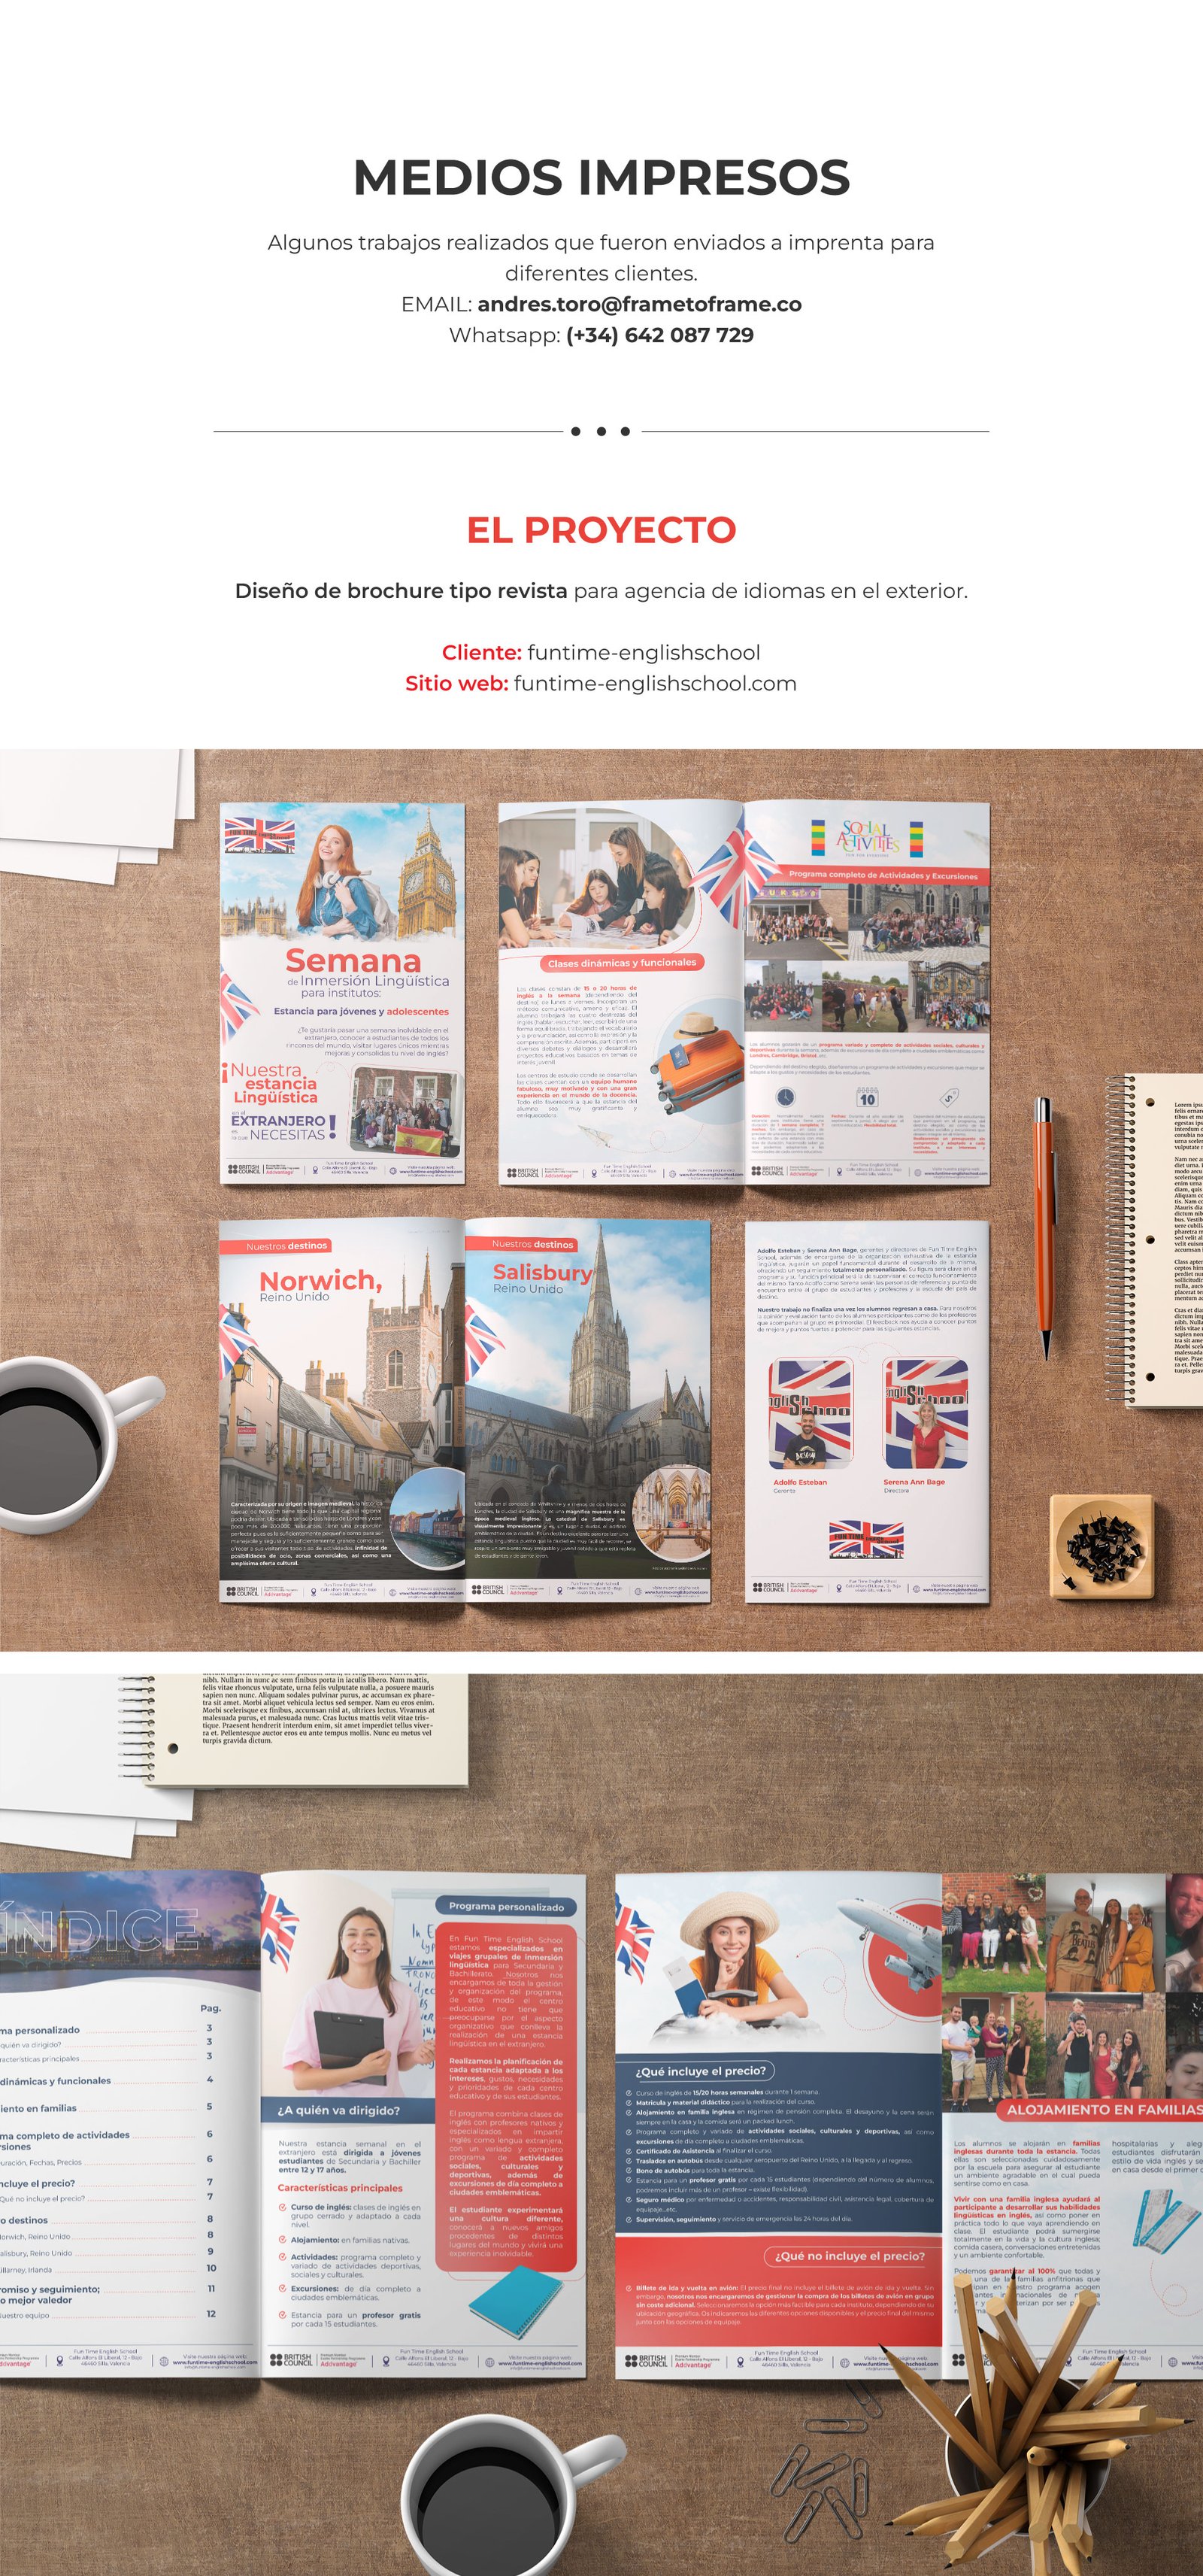 Diseño de brochure tipo revista para agencia de idiomas en el exterior